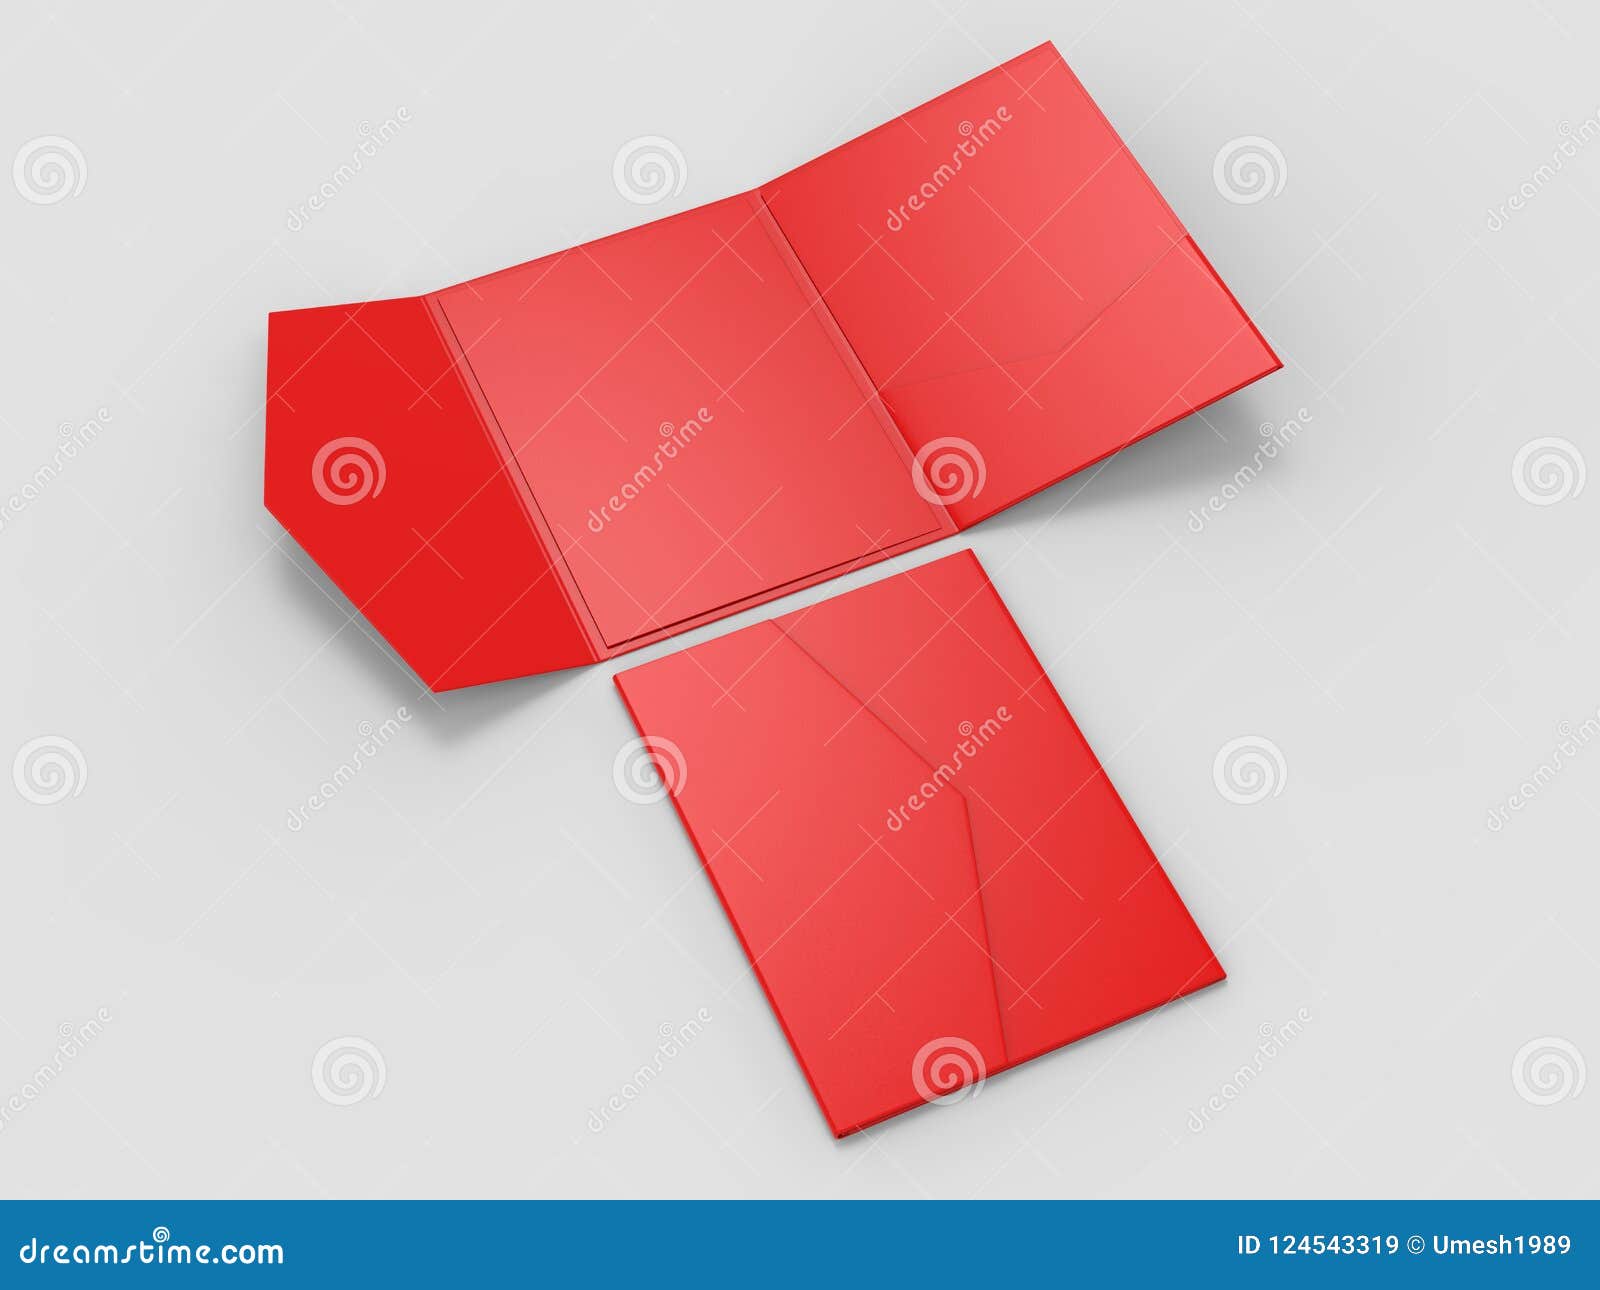 Download Blank Realistic Invitation Envelope Mock Up. 3d Rendering Illustration. Stock Illustration ...